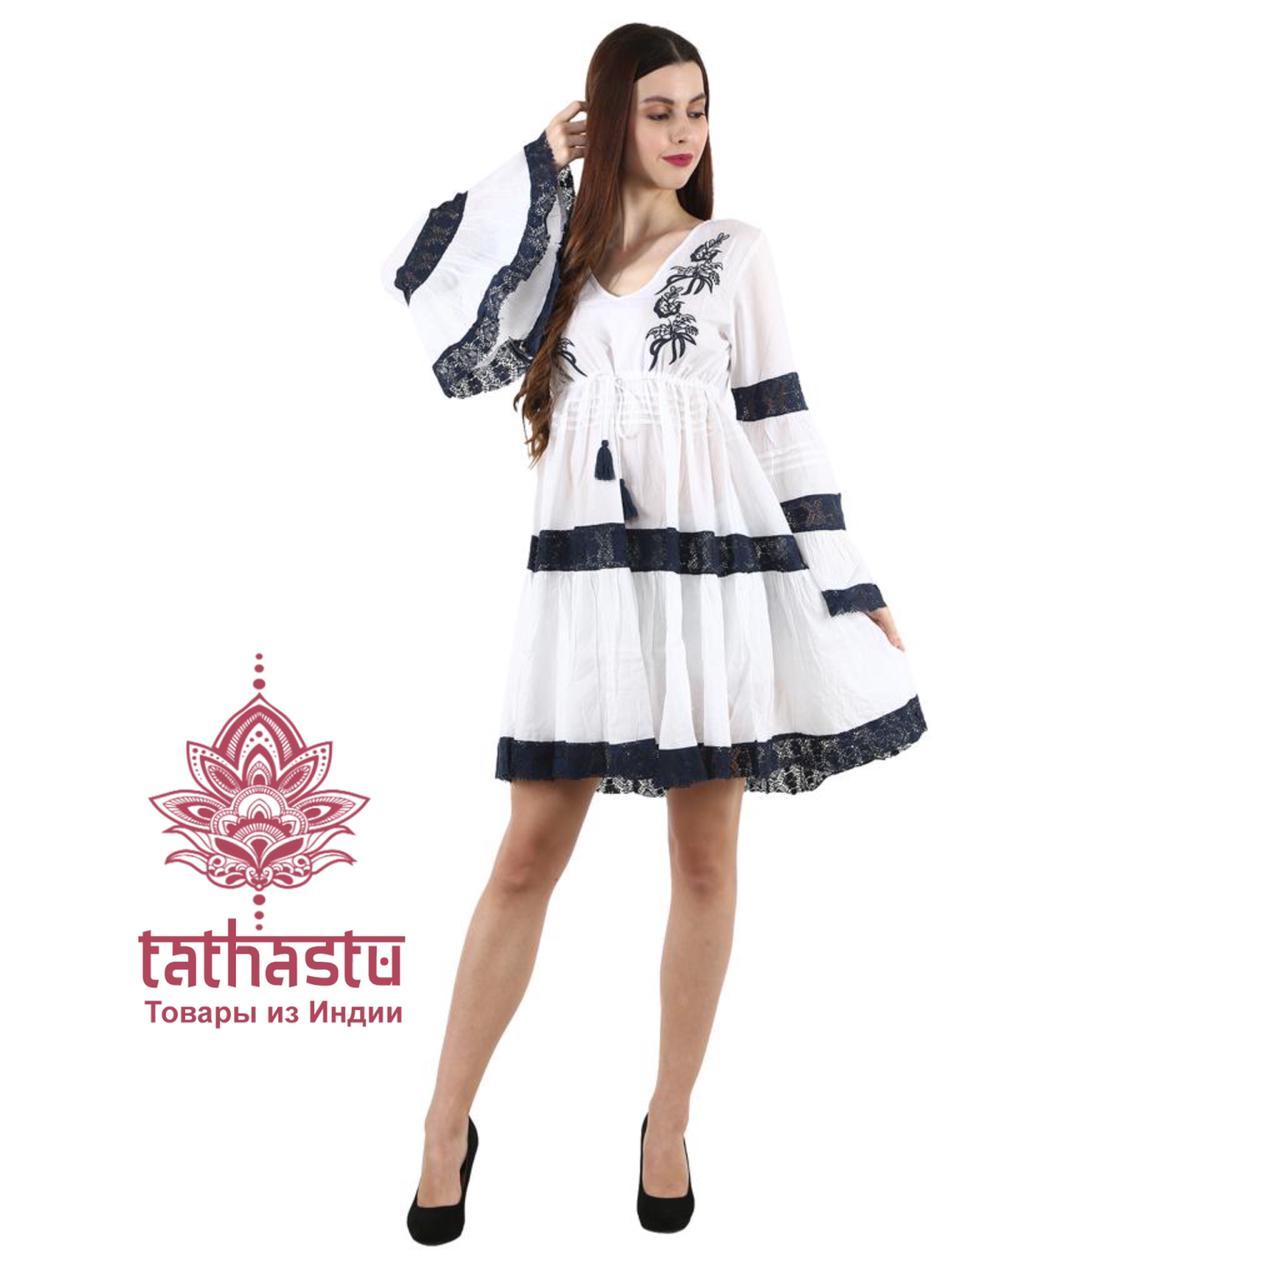 Испанские платья. Мода 2021. Tathastu товары и индии